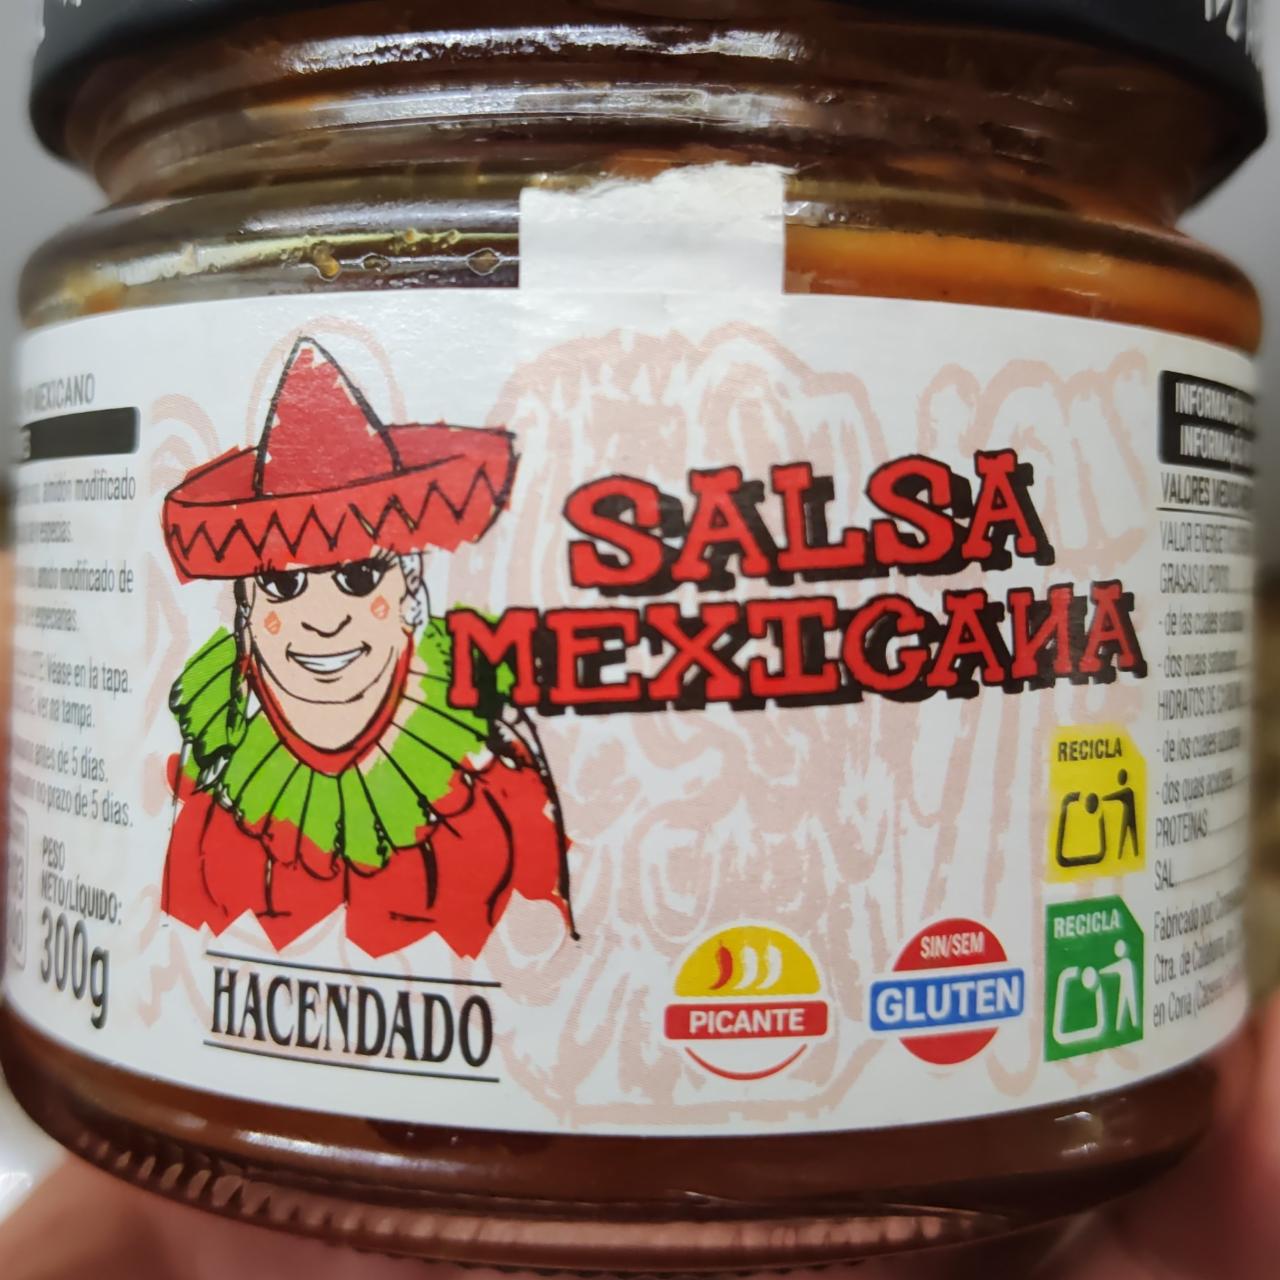 Fotografie - Salsa Mexicana Hacendado